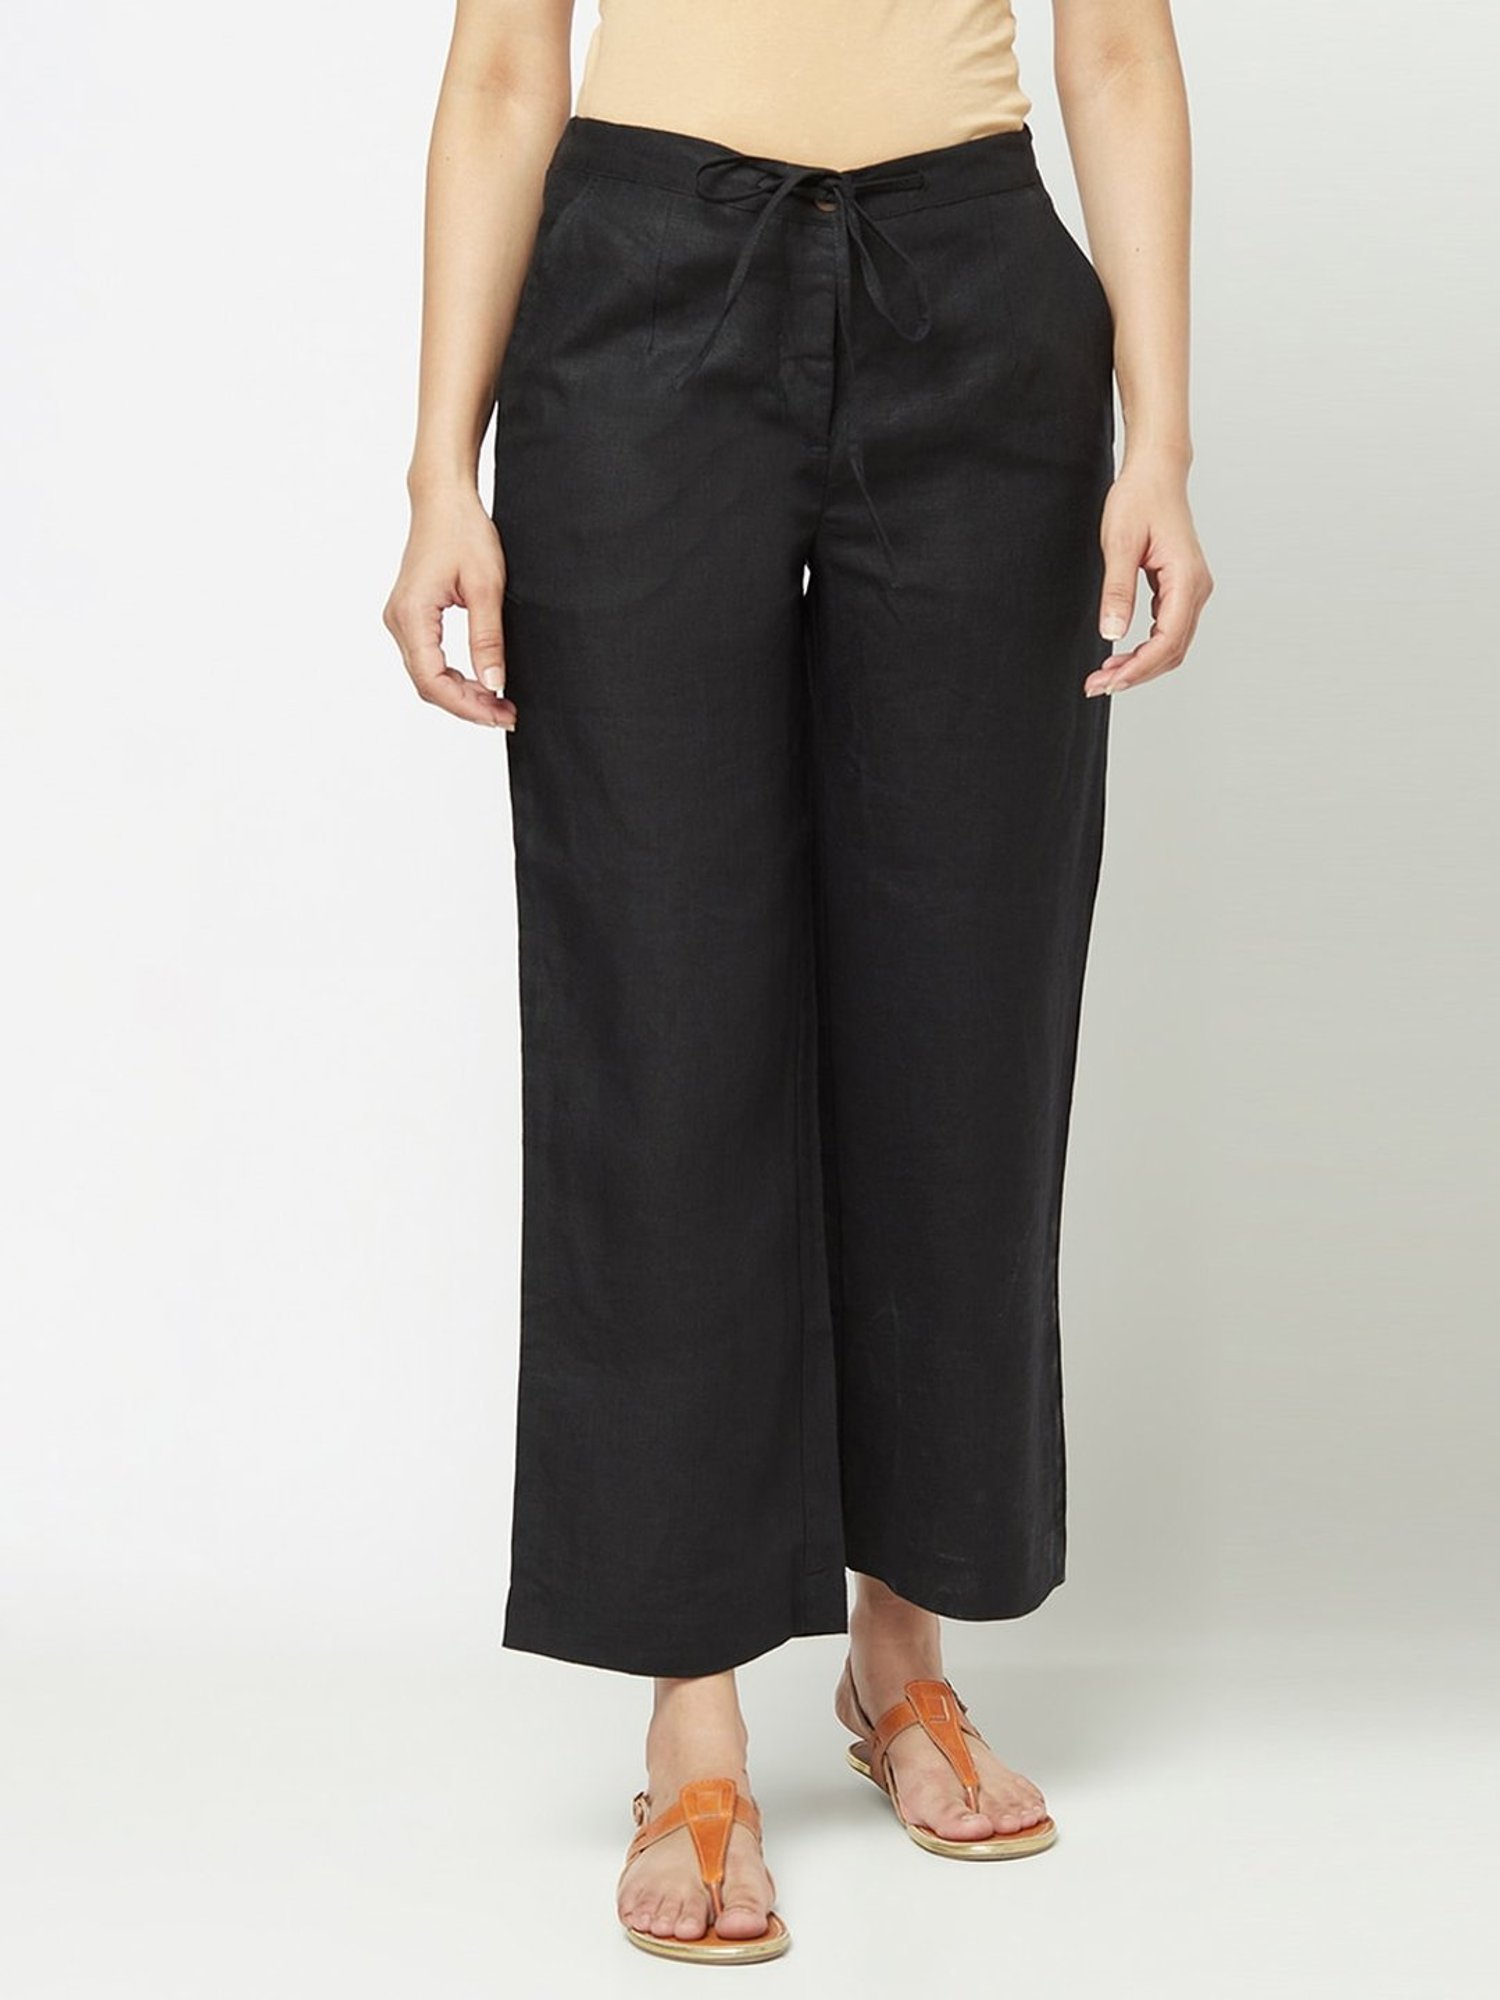 Black linen trousers for women Size S Color Black